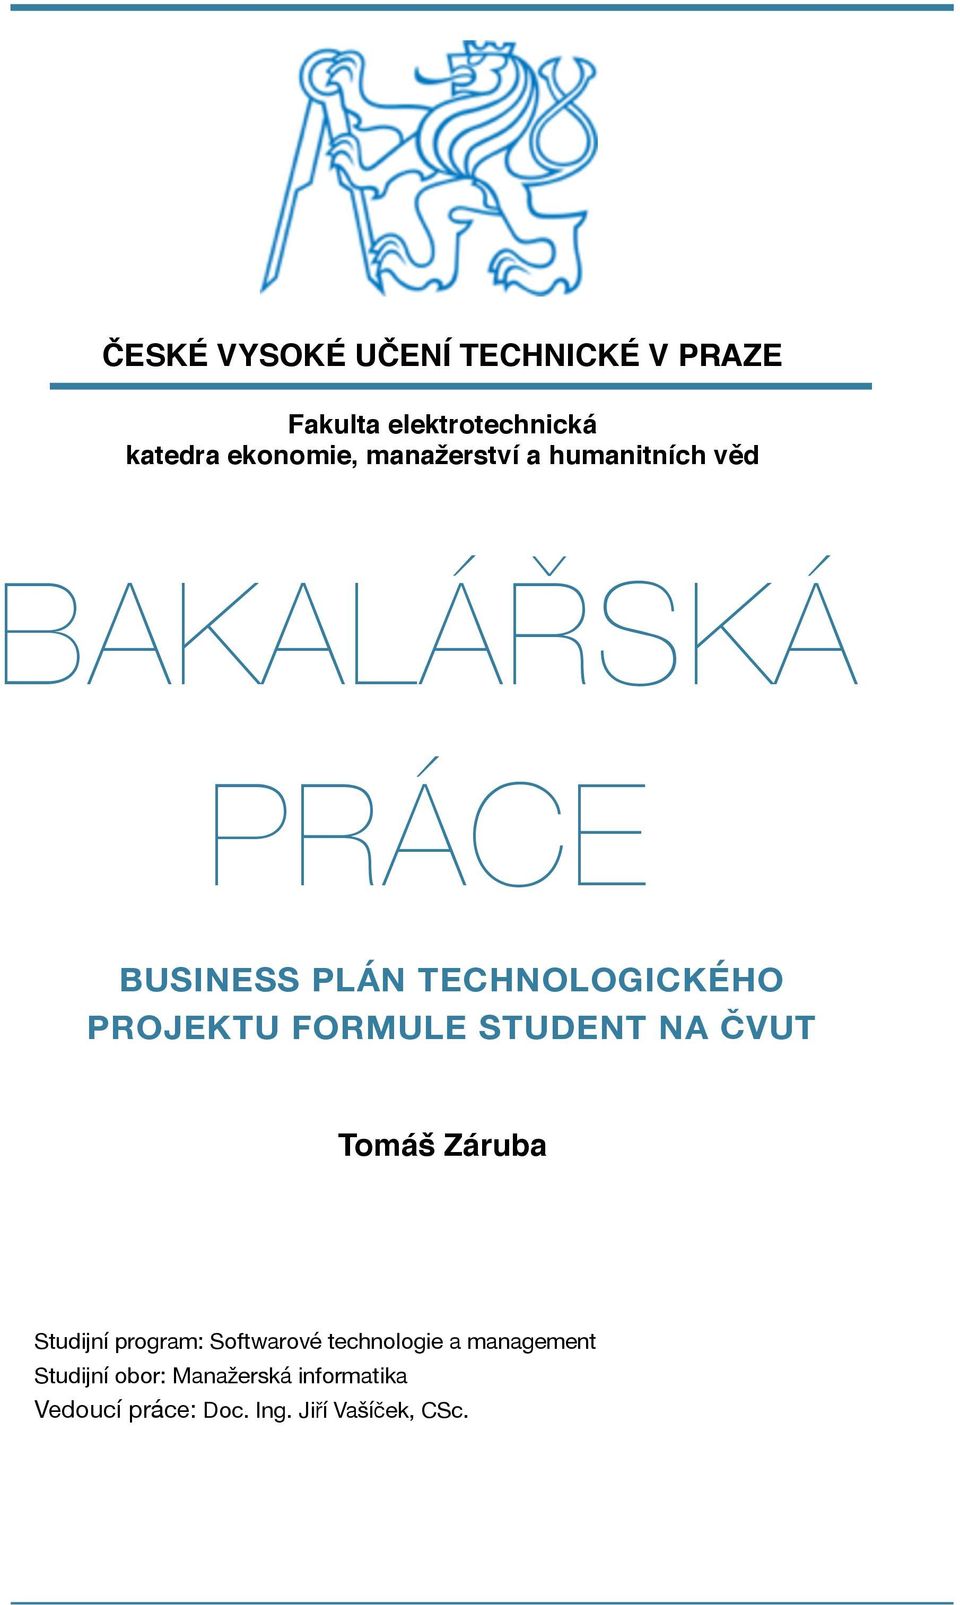 PROJEKTU FORMULE STUDENT NA ČVUT Tomáš Záruba Studijní program: Softwarové